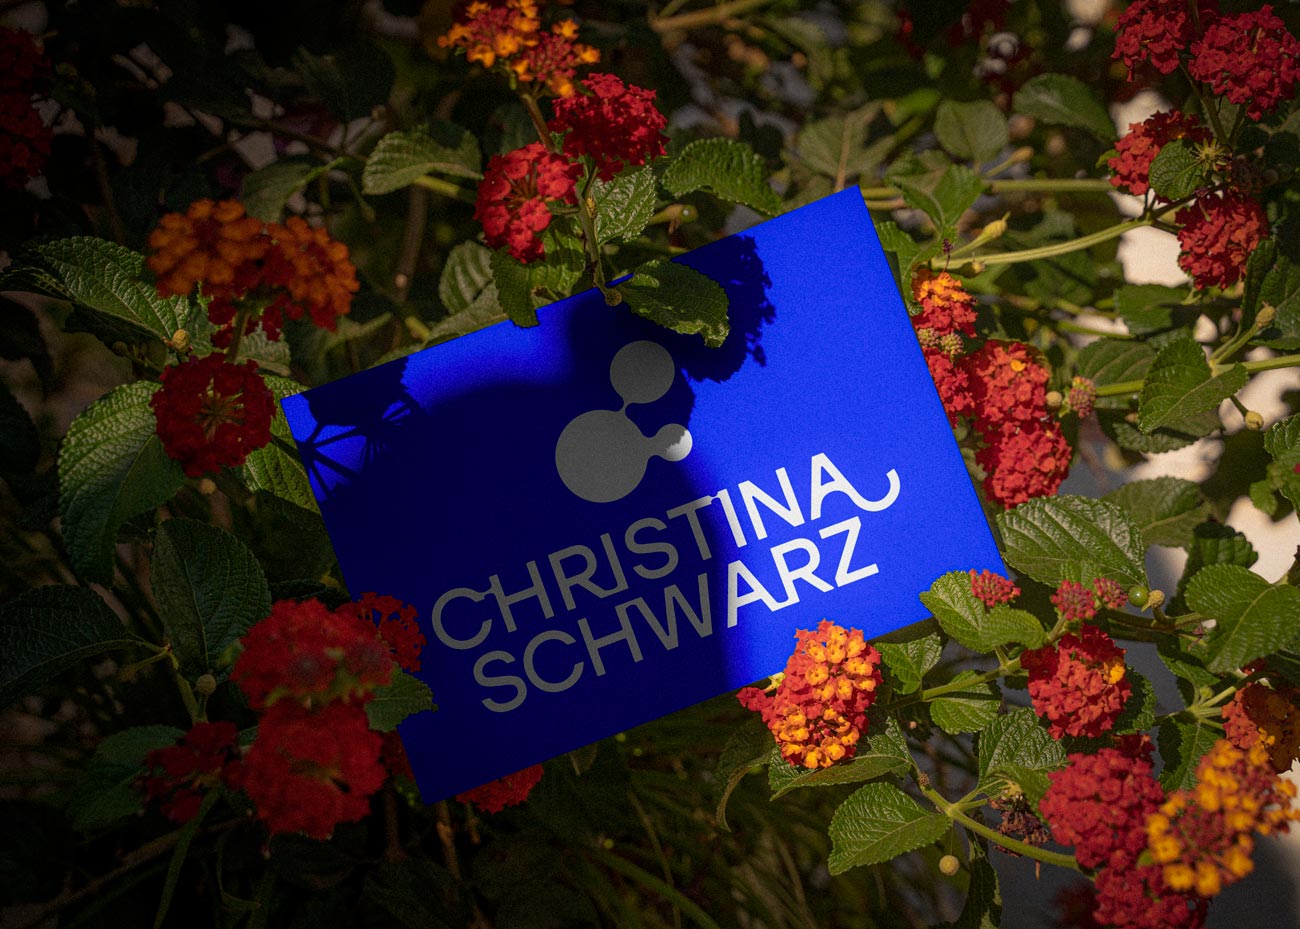 Die bleue Visitenkarte mit dem weißen Logo liegt in einem grünen Strauch, gesäumt von roten und orangenen Blumen. Der Strauch wirft starke Schatten auf Teile der Visitankarte.